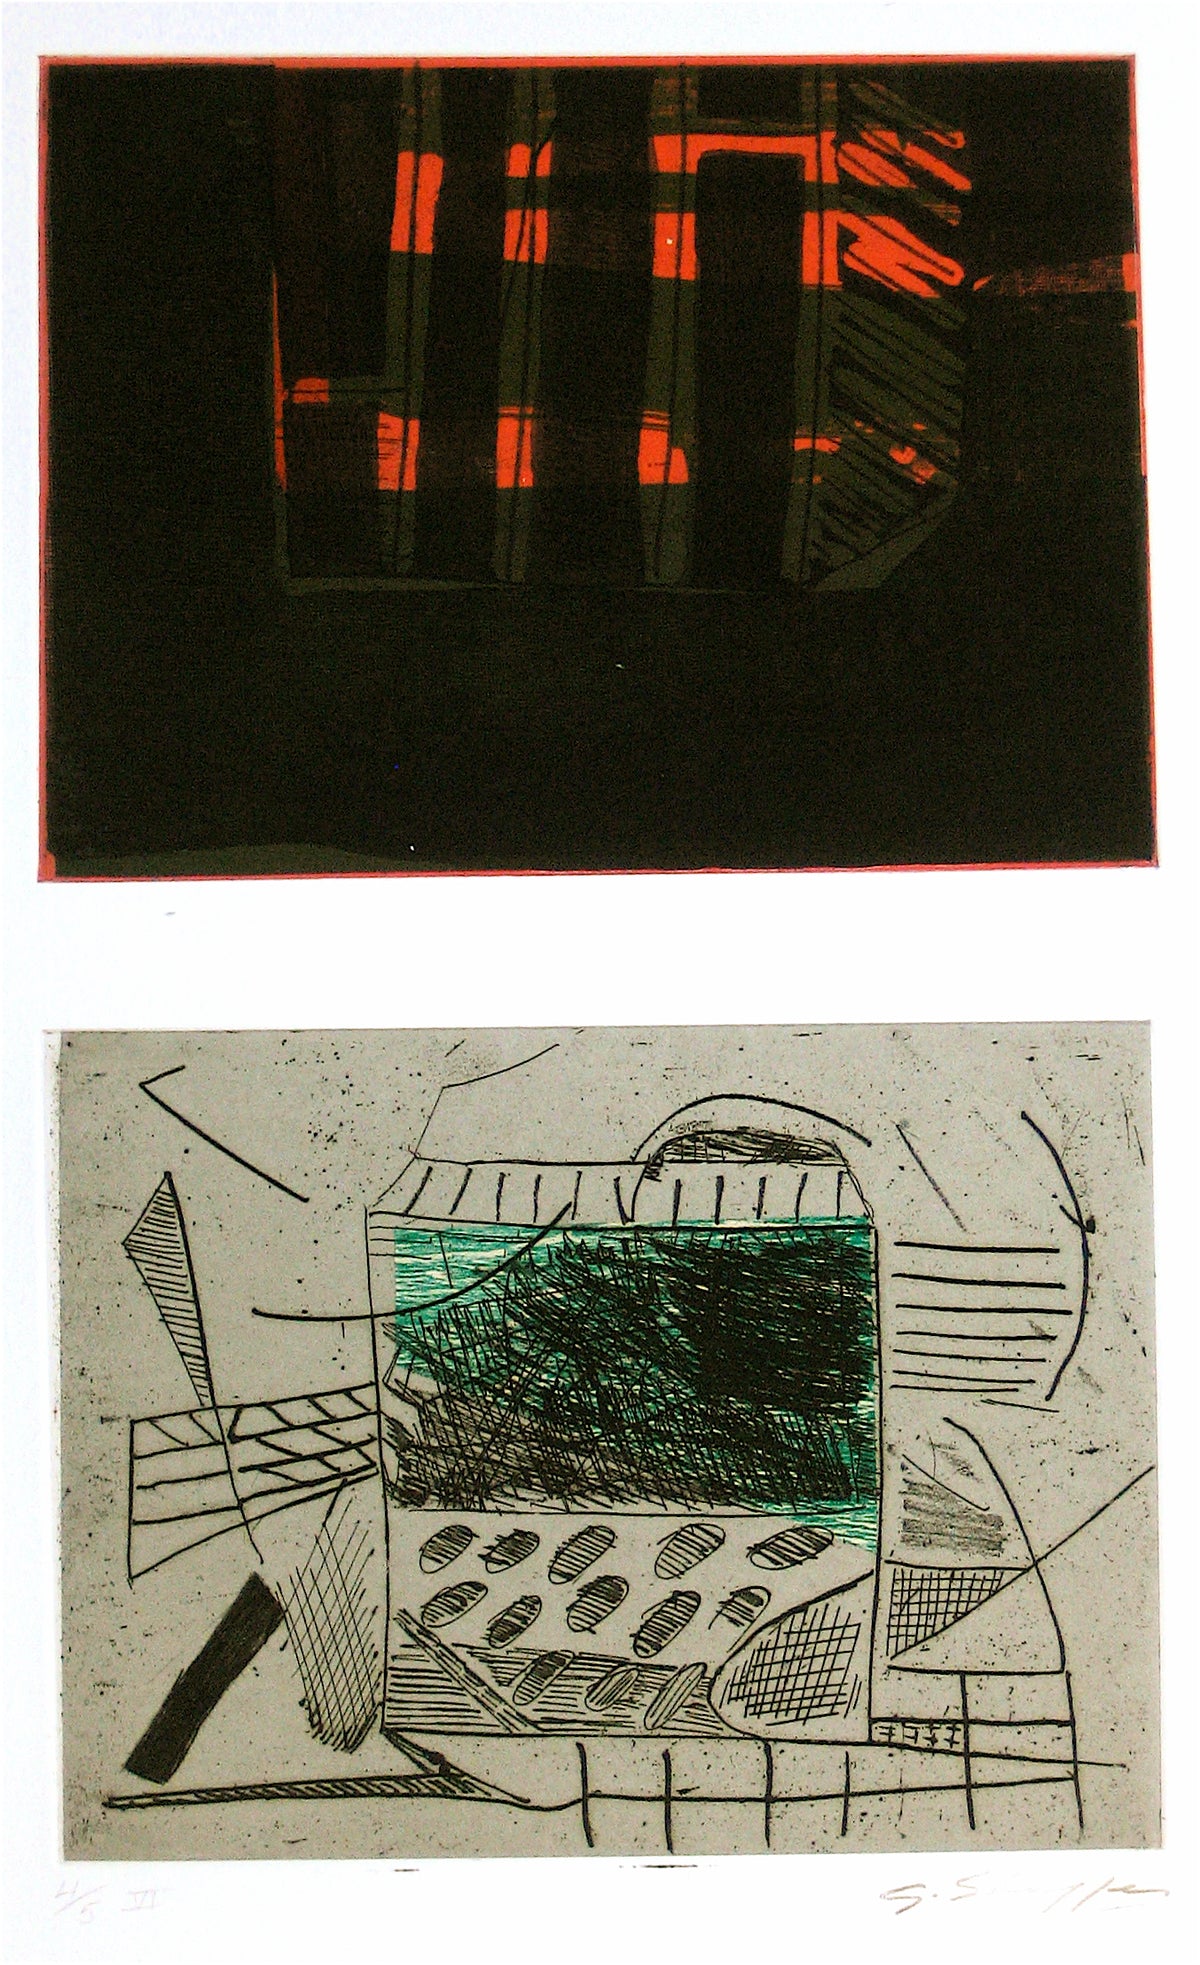 Abstracted Duel Image &lt;br&gt;1989 Litho &amp; Chine Colle &lt;br&gt;&lt;br&gt;#11780